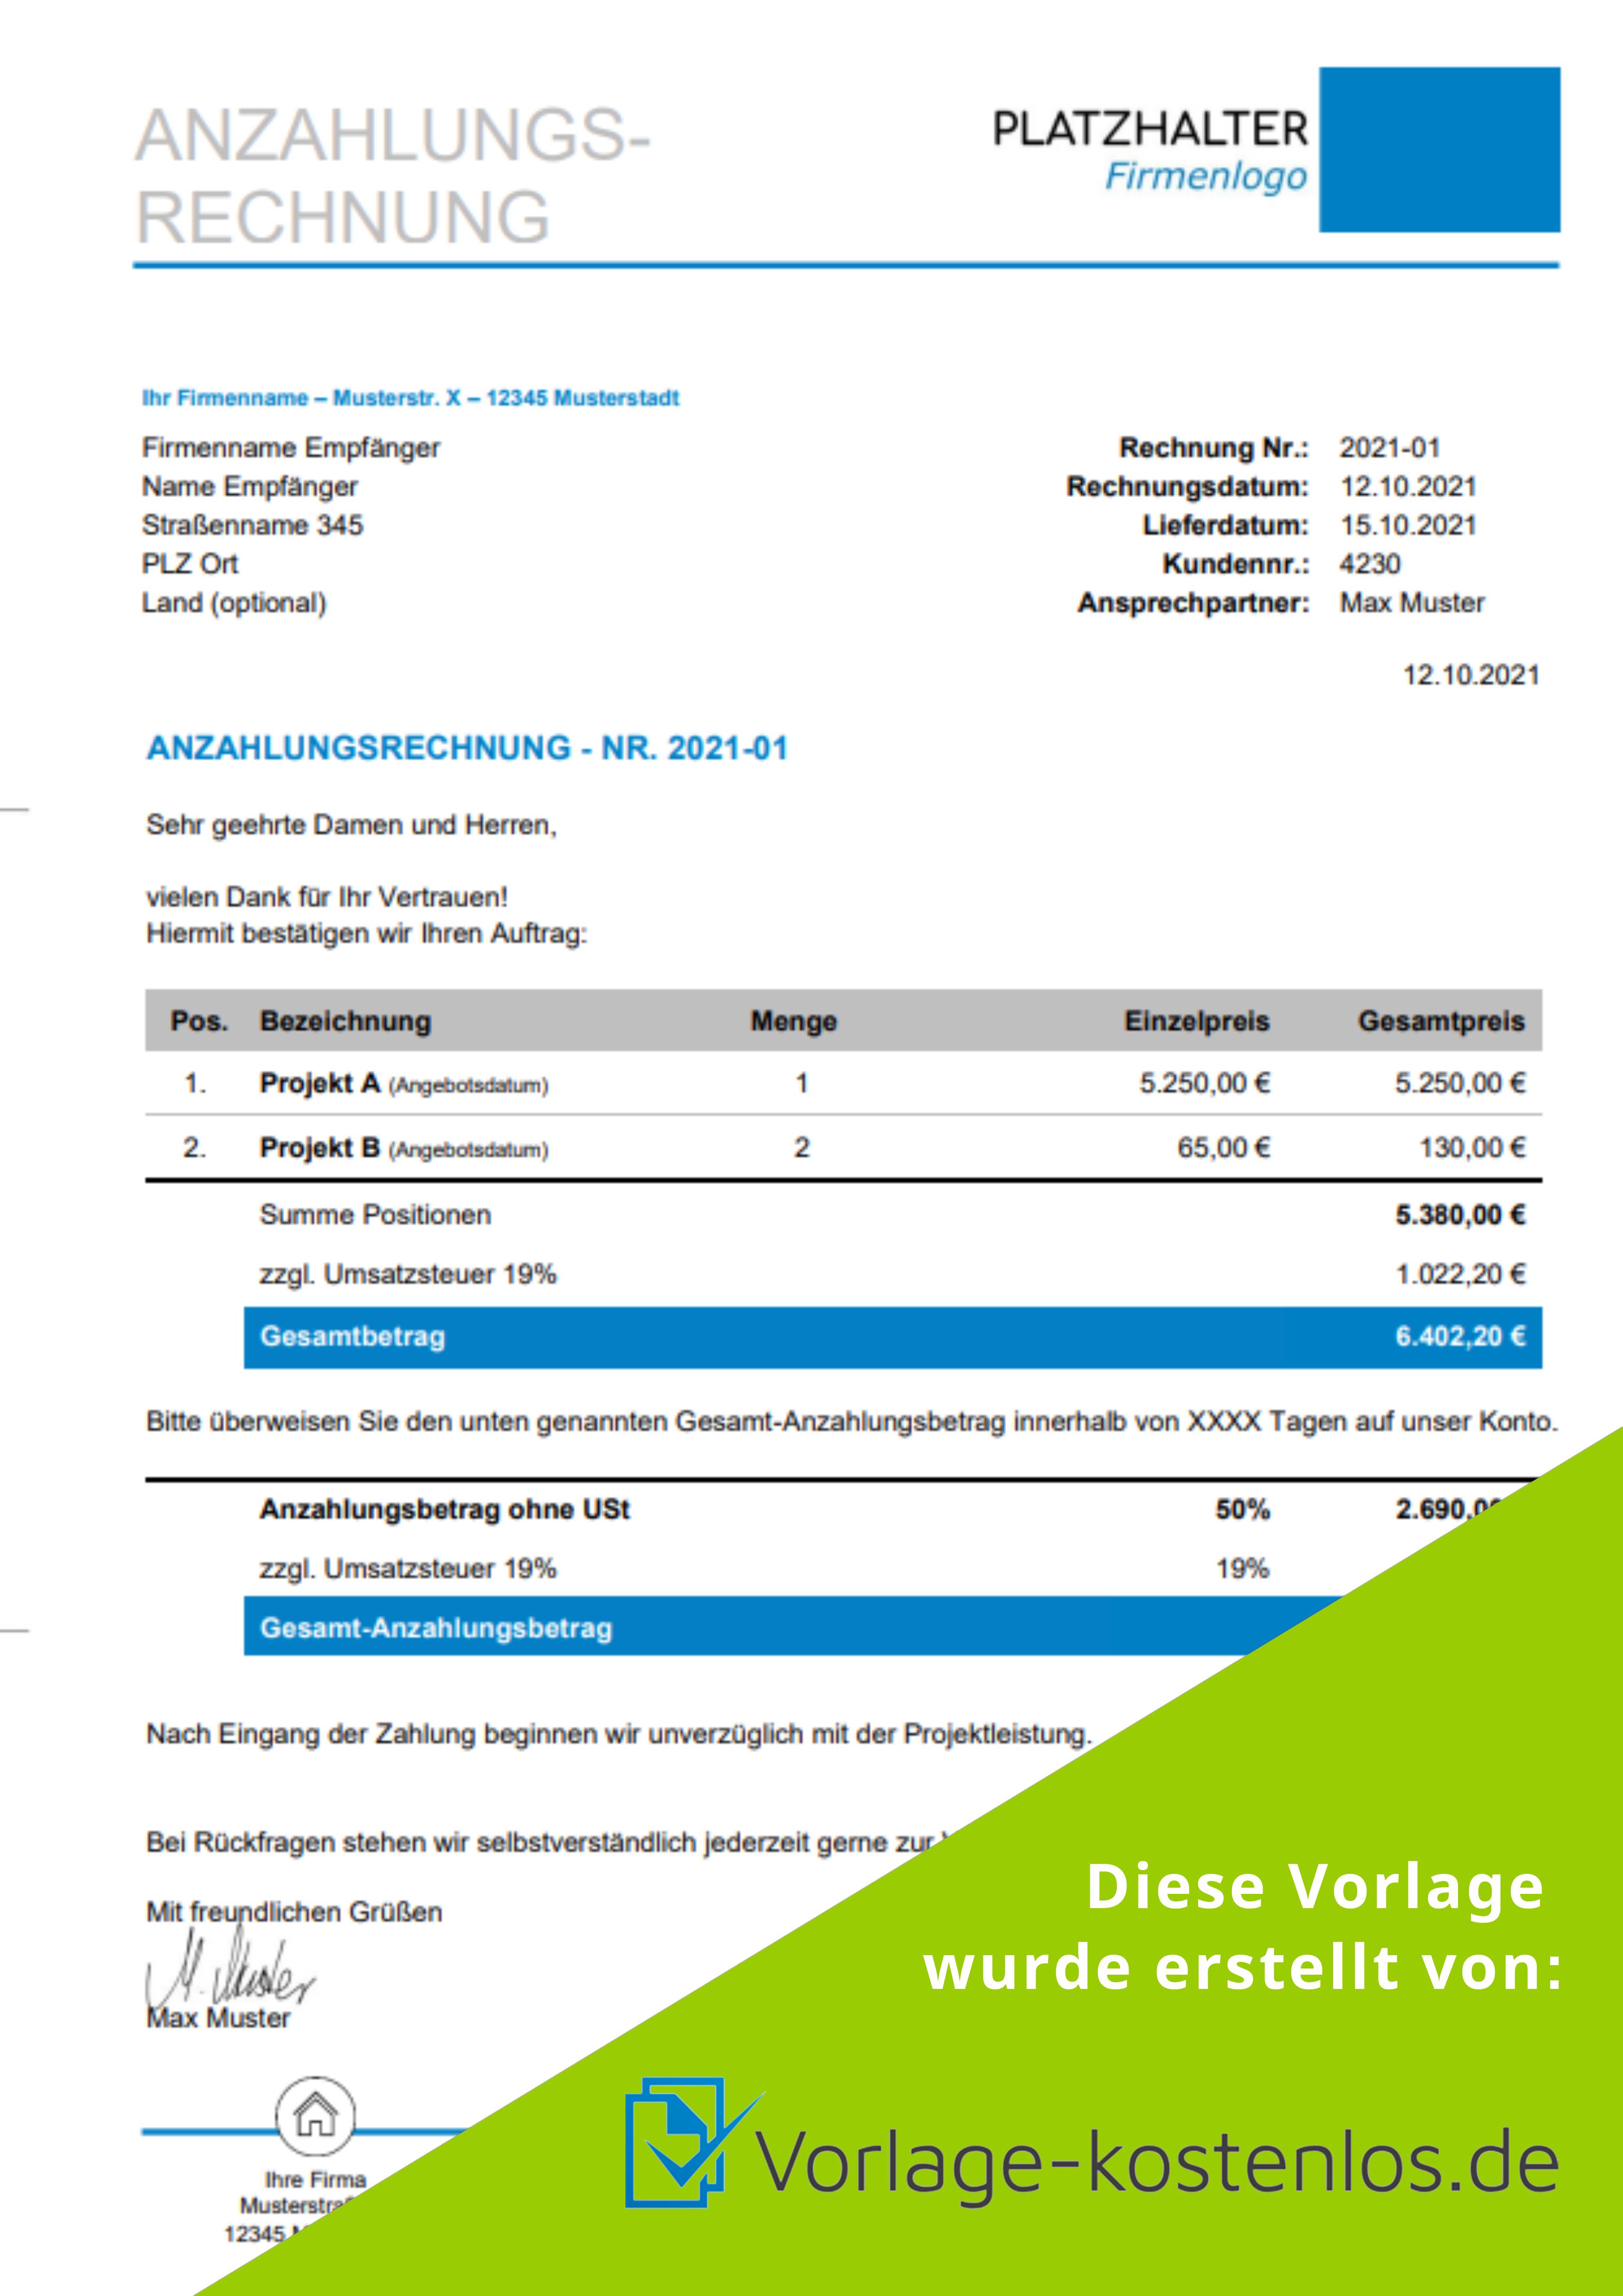 Anzahlungsrechnung Muster-Beispiel & Vordruck zum Download von vorlage-kostenlos.de